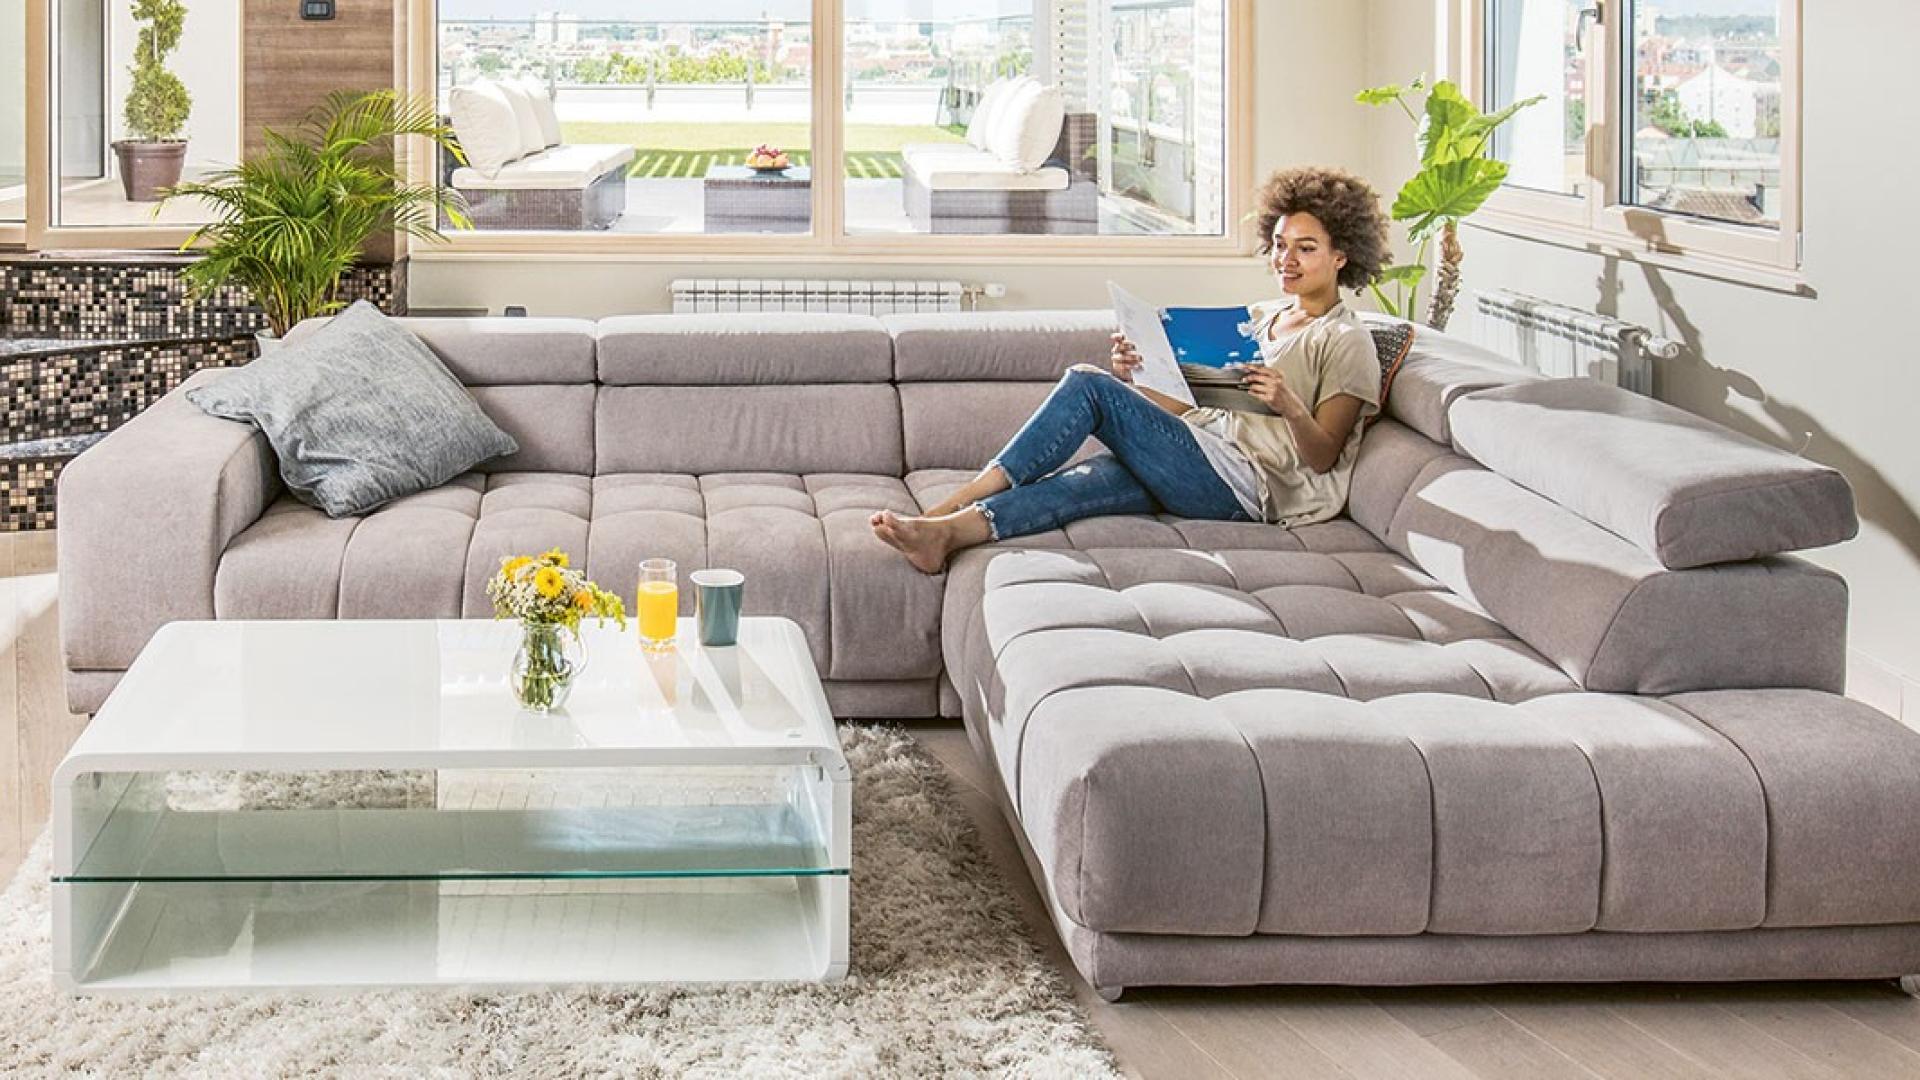 Eine junge Frau sitzt entspannt auf einer großen Couch in einem Wohnzimmer und ließt ein Prospekt.